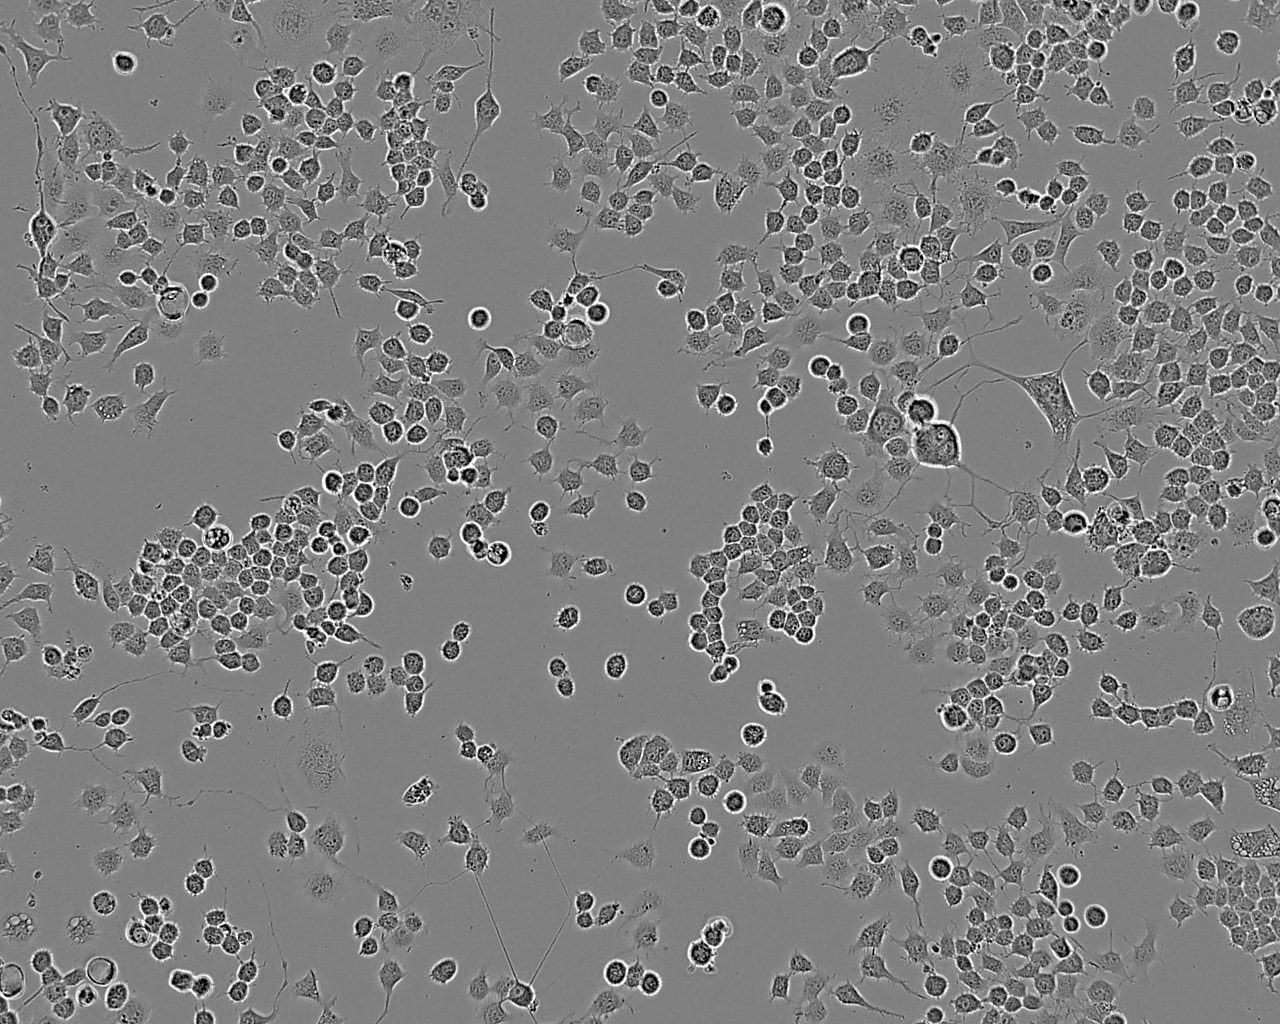 HeLa S3 Cells|人宫颈癌细胞系